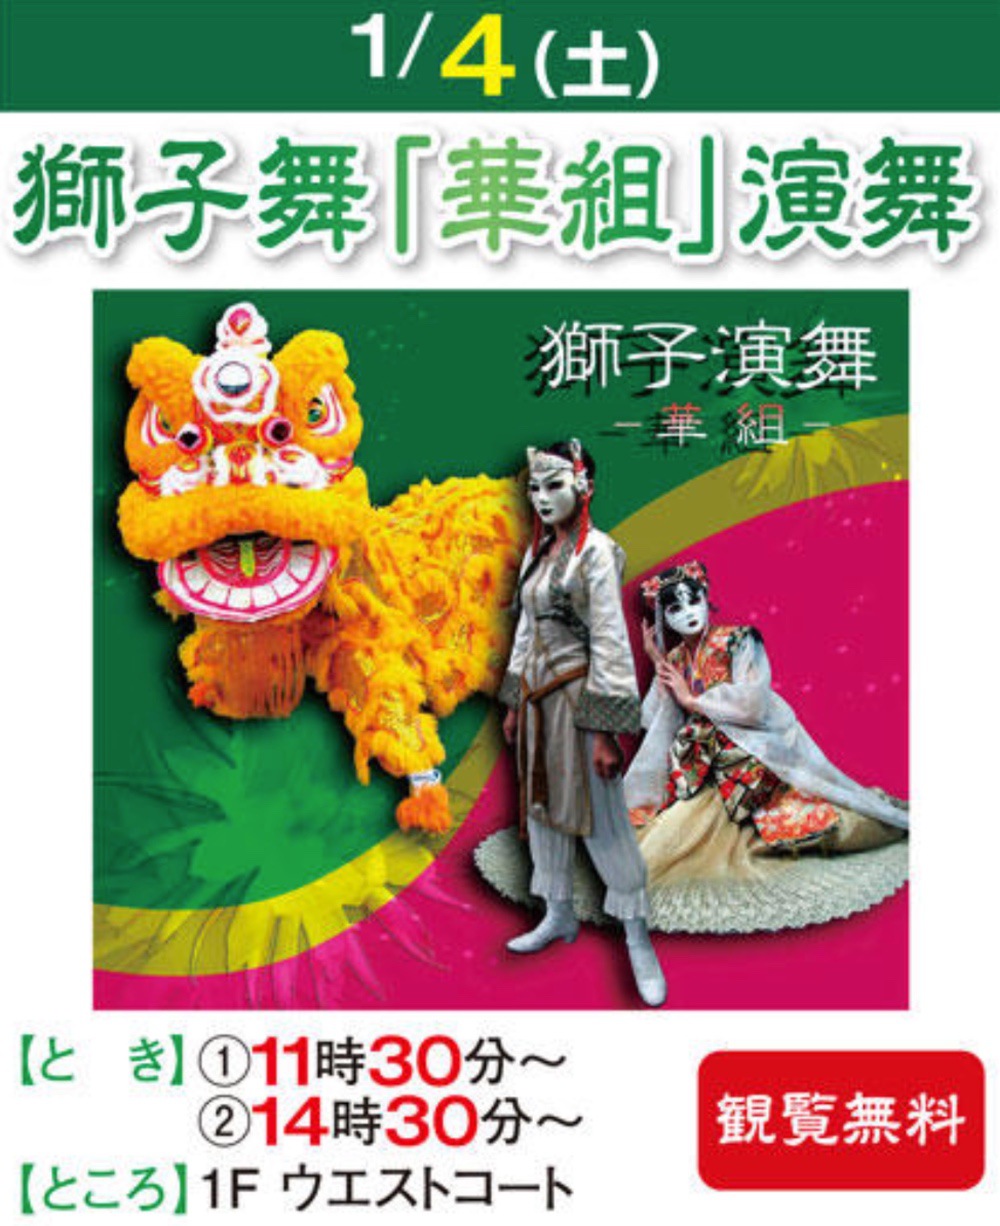 ゆめタウン久留米 獅子舞「華組」演舞 日本伝統芸能の獅子舞開催